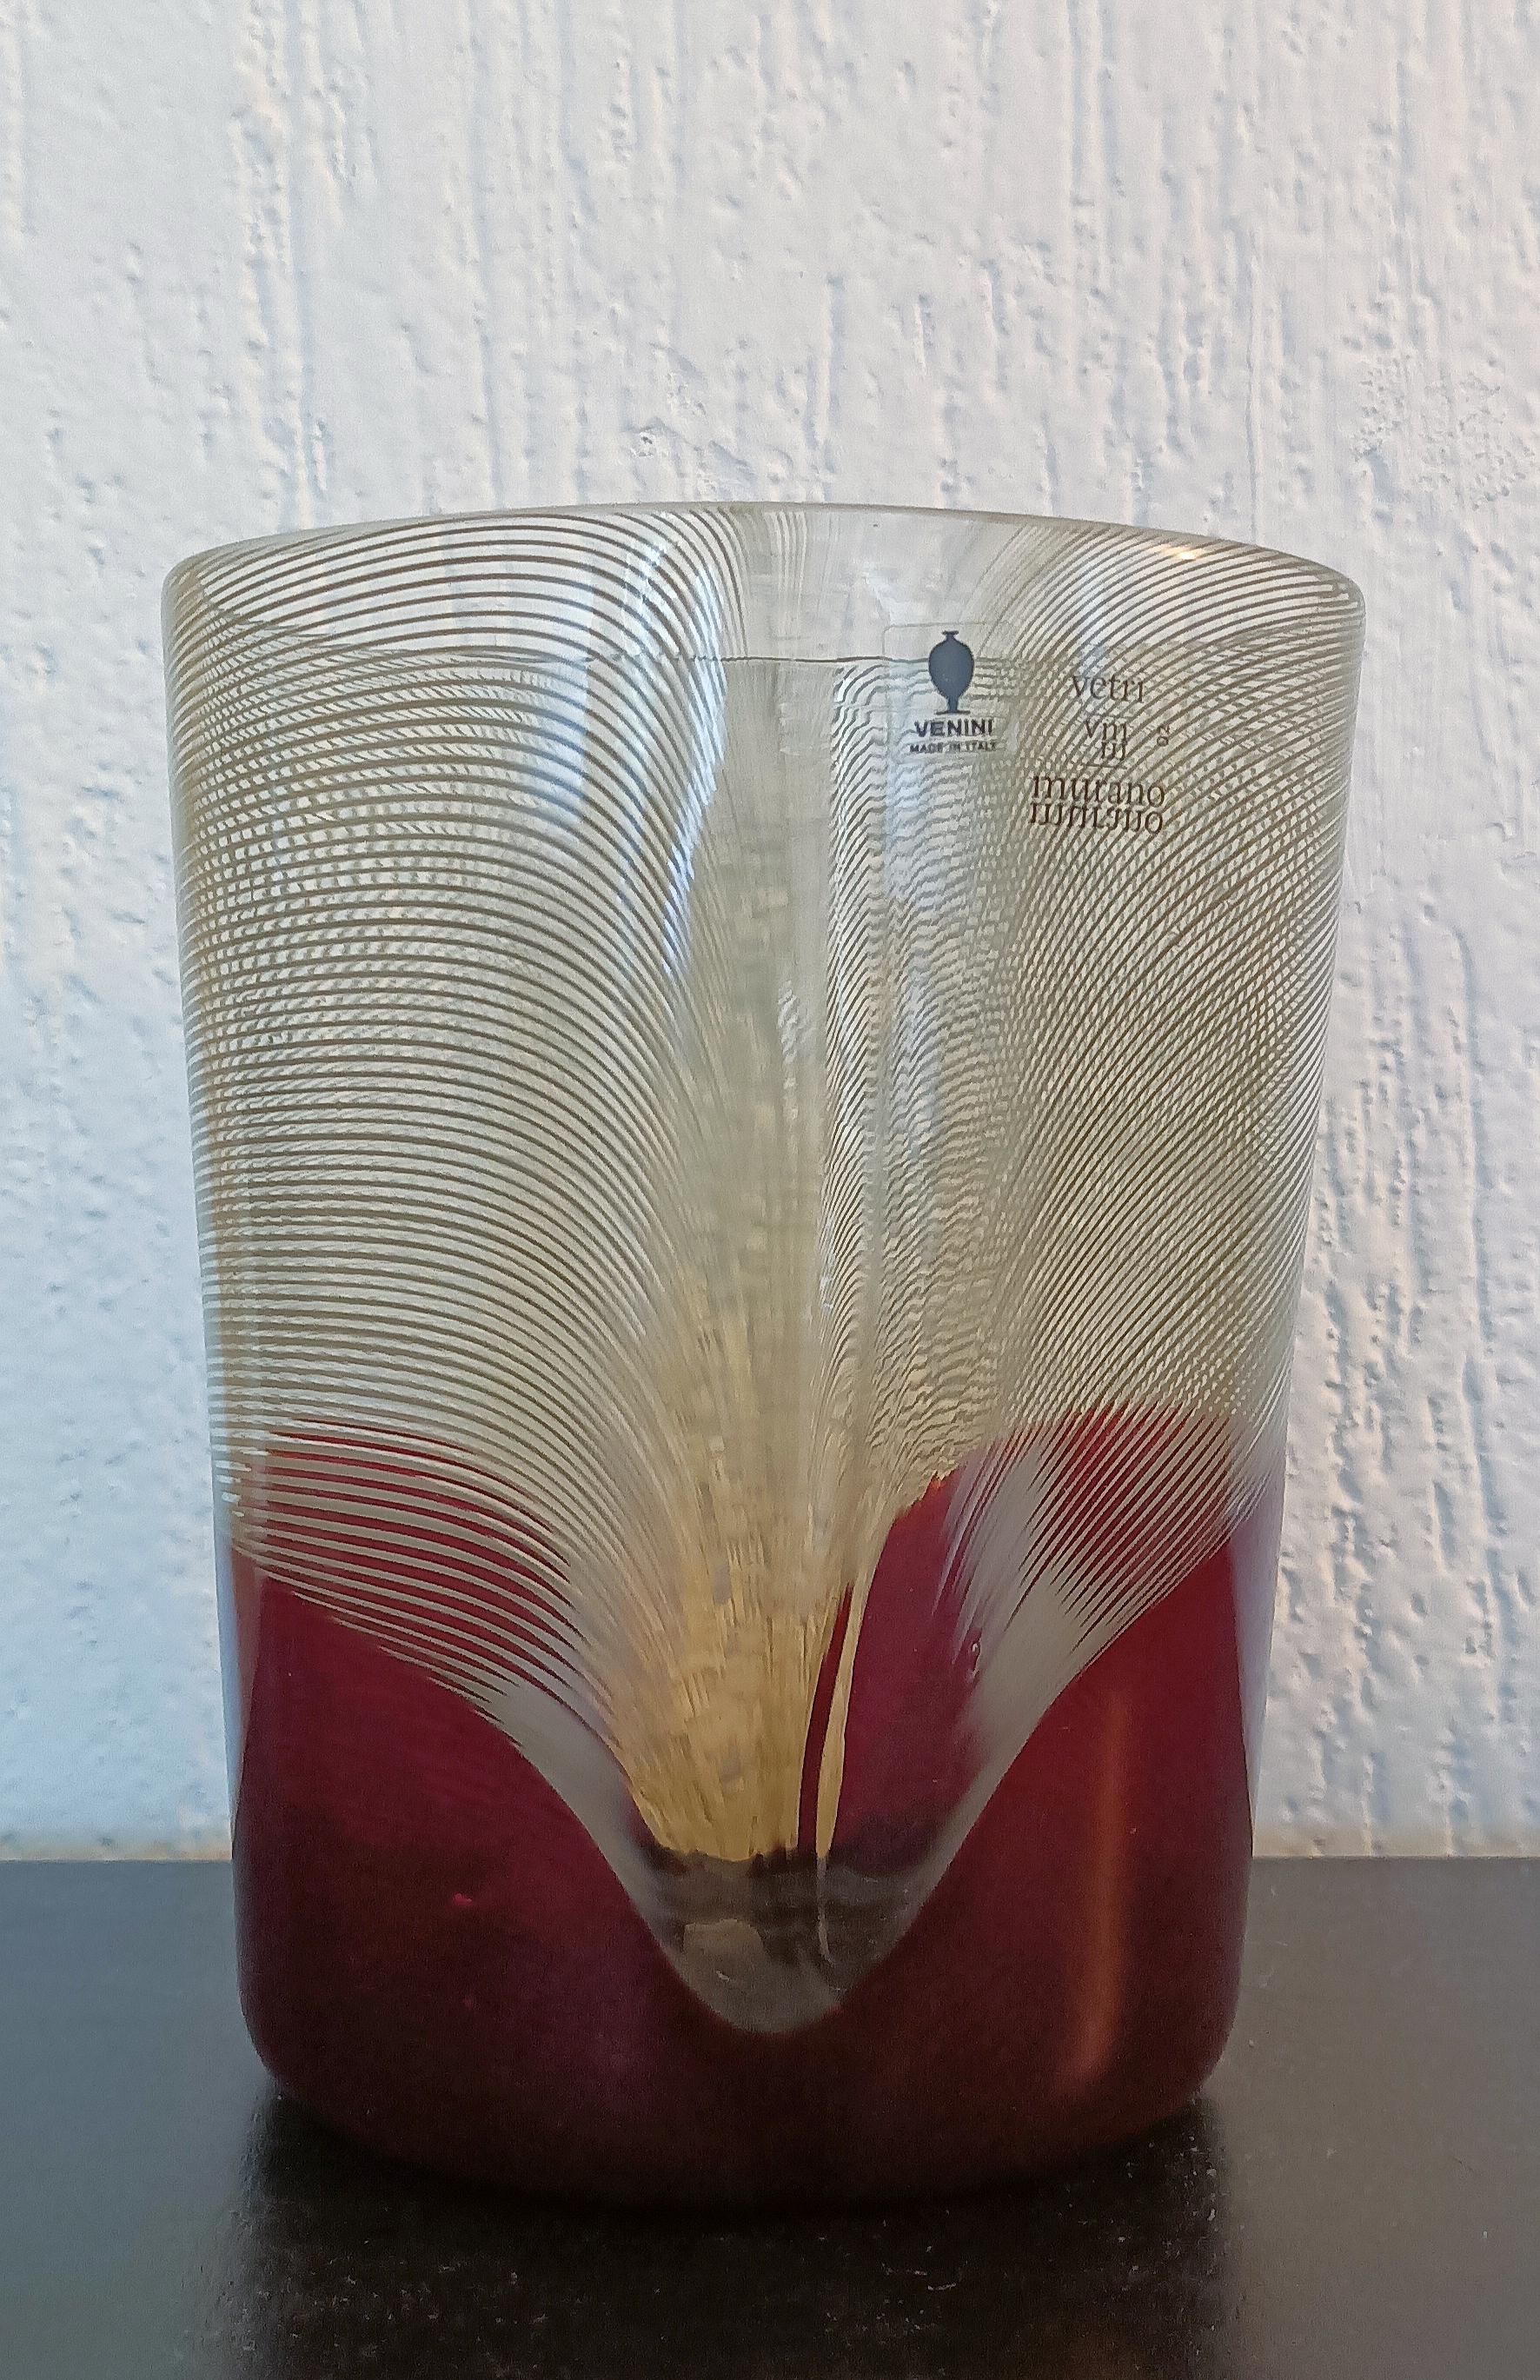 Tapio Wirkkala Pavoni vase designed for Venini, Murano in 1982.
Signed on the bottom: Venini Italia TW 82 and signed with decal label to side: Vetri VM Murano 02 Venini Made in Italy.

Bibliography: Venini Glass: Catalogue 1921-2007, Deboni, pl.